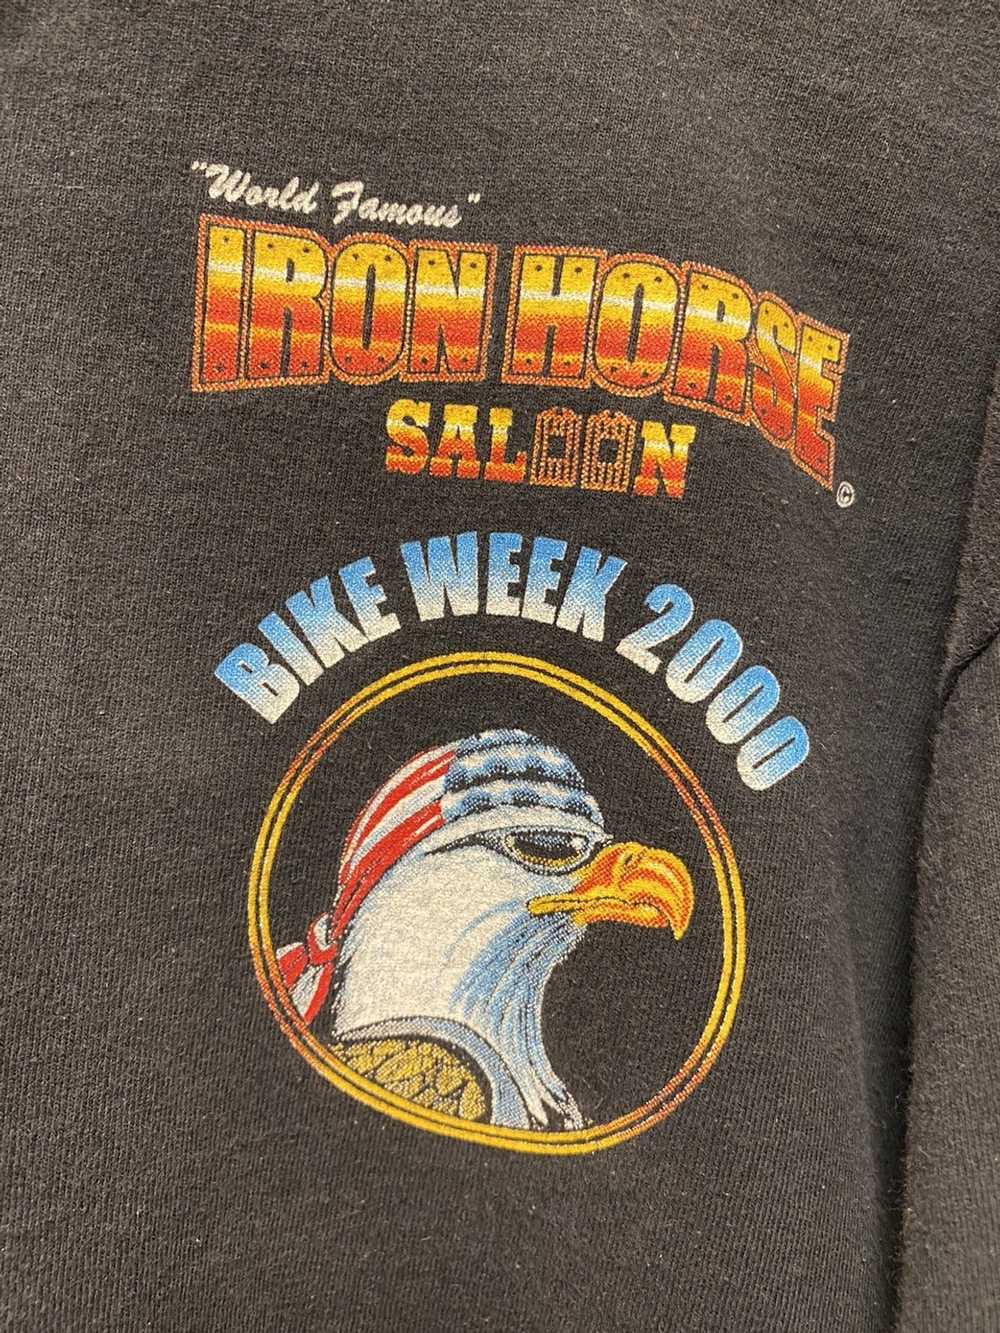 Vintage Vintage 2000 Iron Horse Saloon Bike Week … - image 2